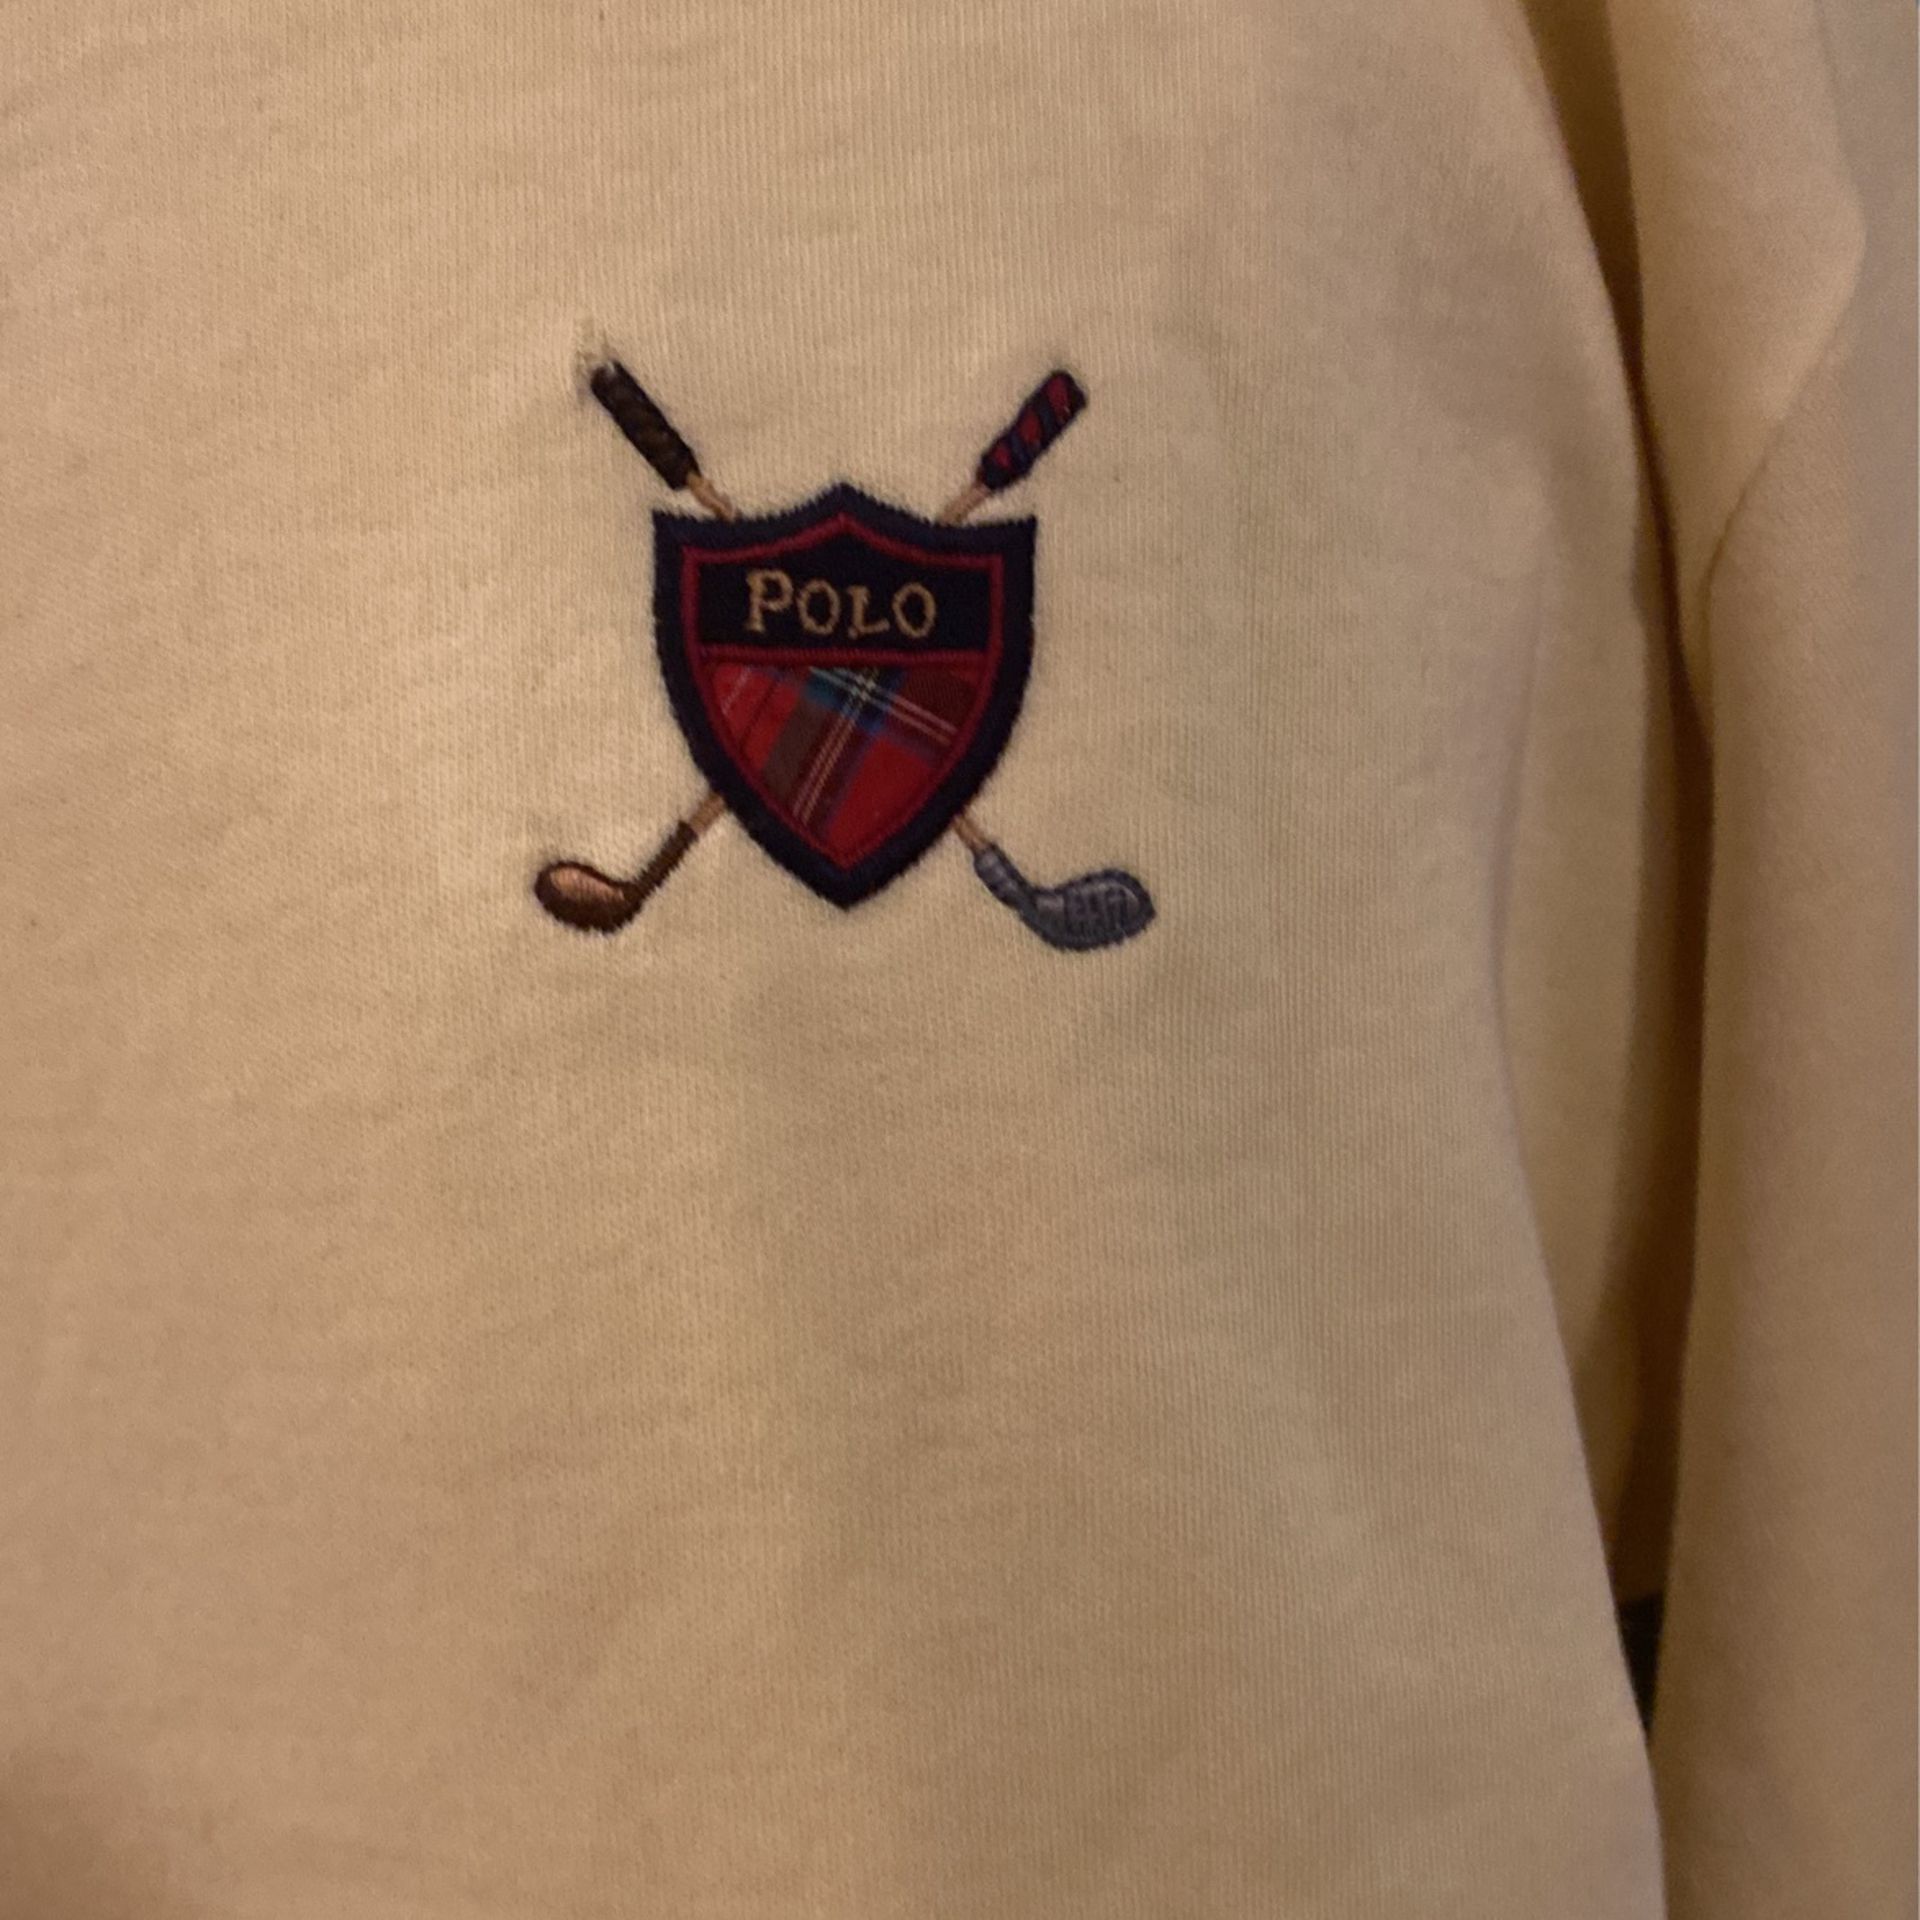 Ralph Lauren Polo Golf Shirt Size Medium Men’s Shirt 